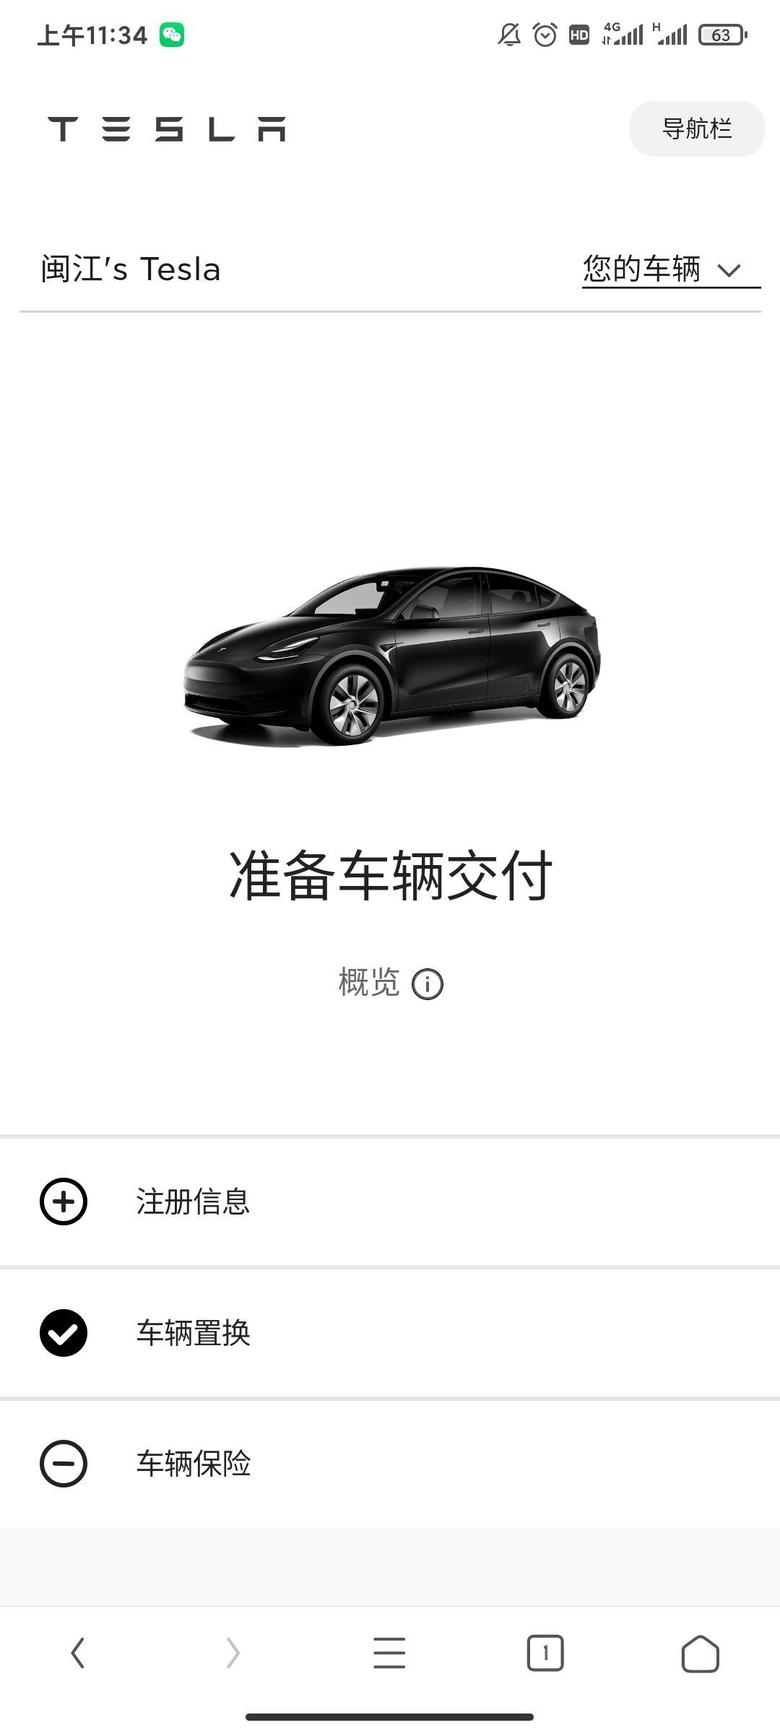 model y 深圳提车，因为省钱，想买个店外的保险，朋友们可以推荐一下吗？